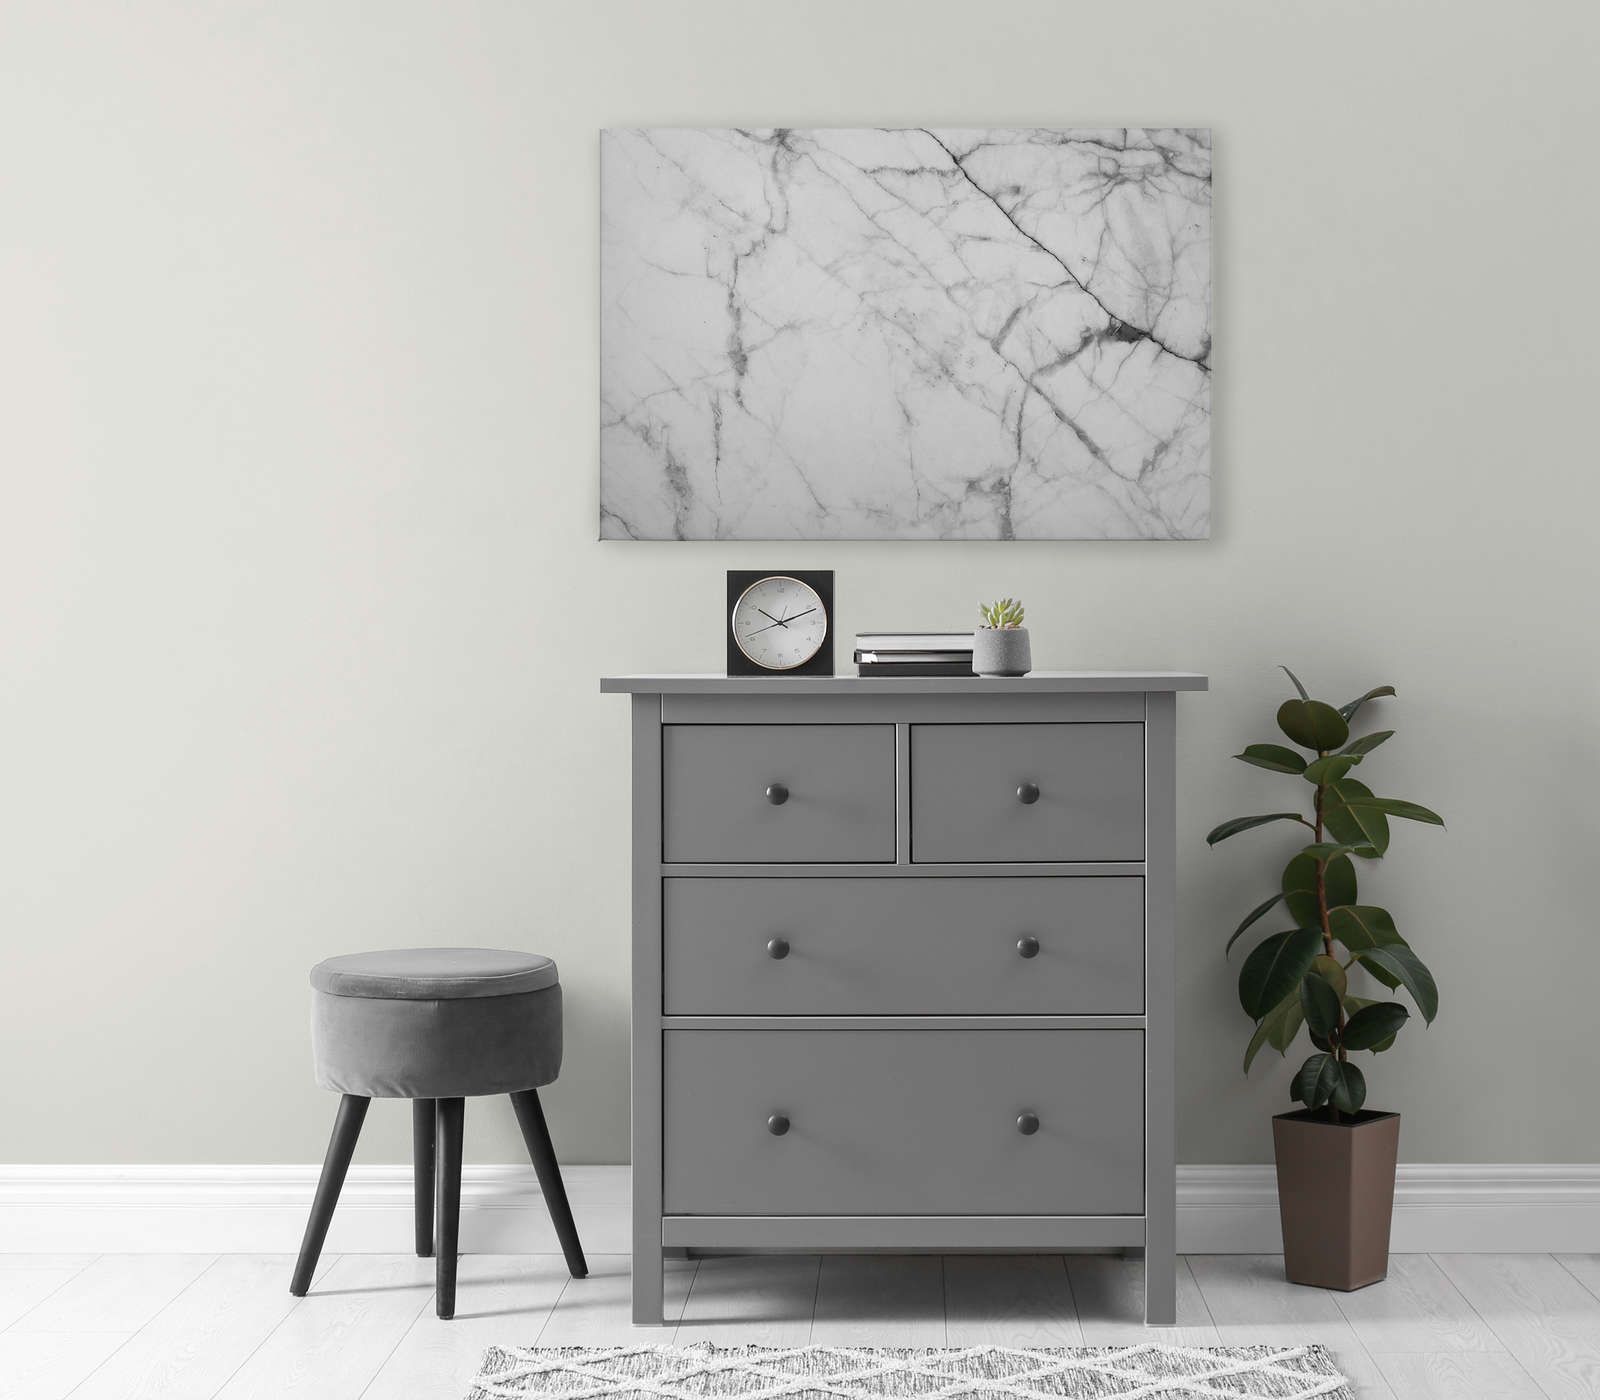             Schwarz-Weiß Leinwandbild Marmor mit natürlichen Details – 1,20 m x 0,80 m
        